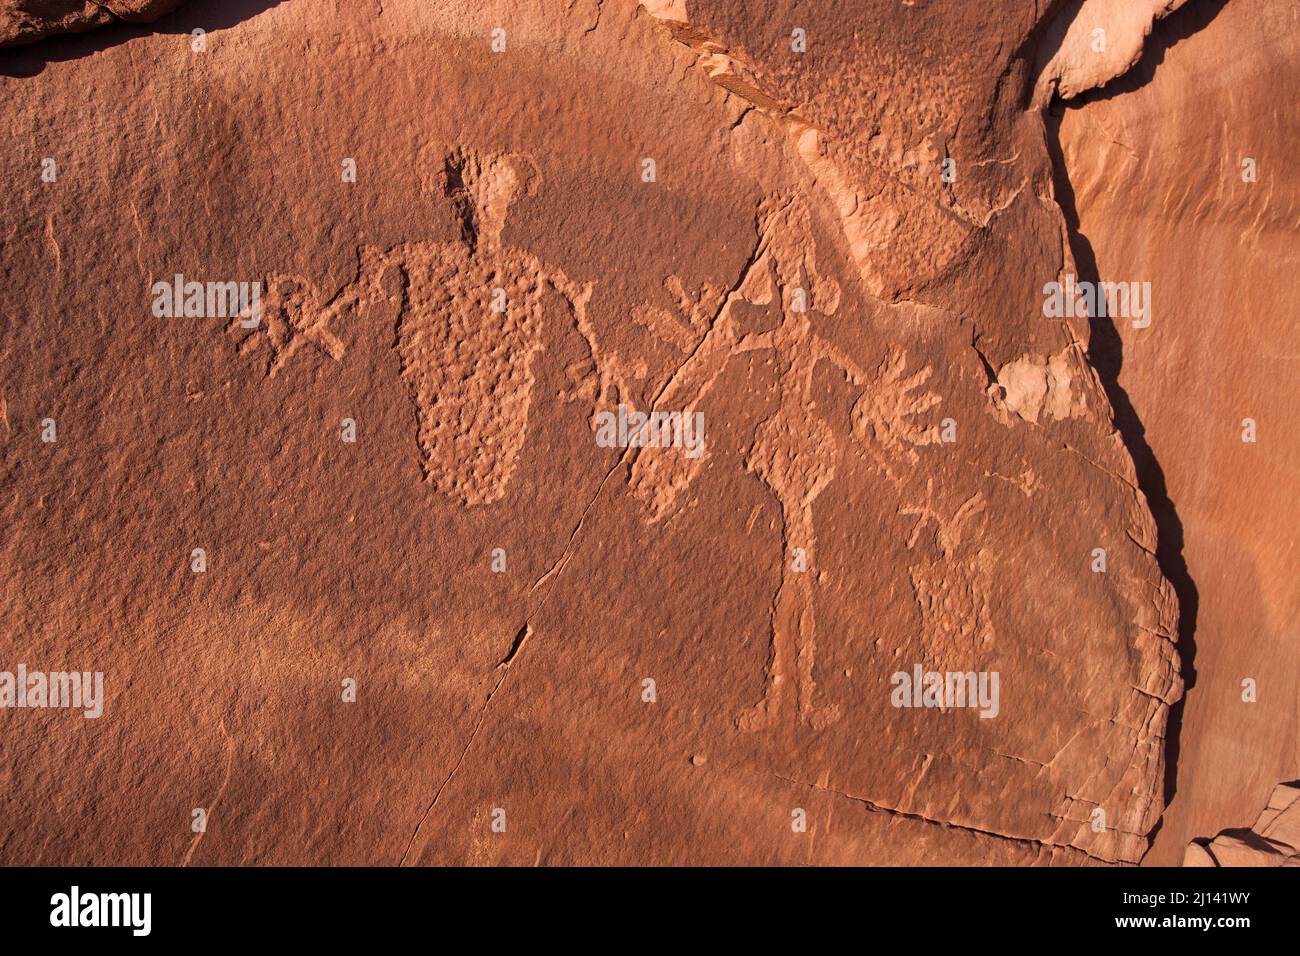 Arte rupestre ancestrale Puebloan nativa americana nel canyon di Kane Creek vicino a Moab, Utah. Questi petroglifi hanno più di 800 anni. Foto Stock